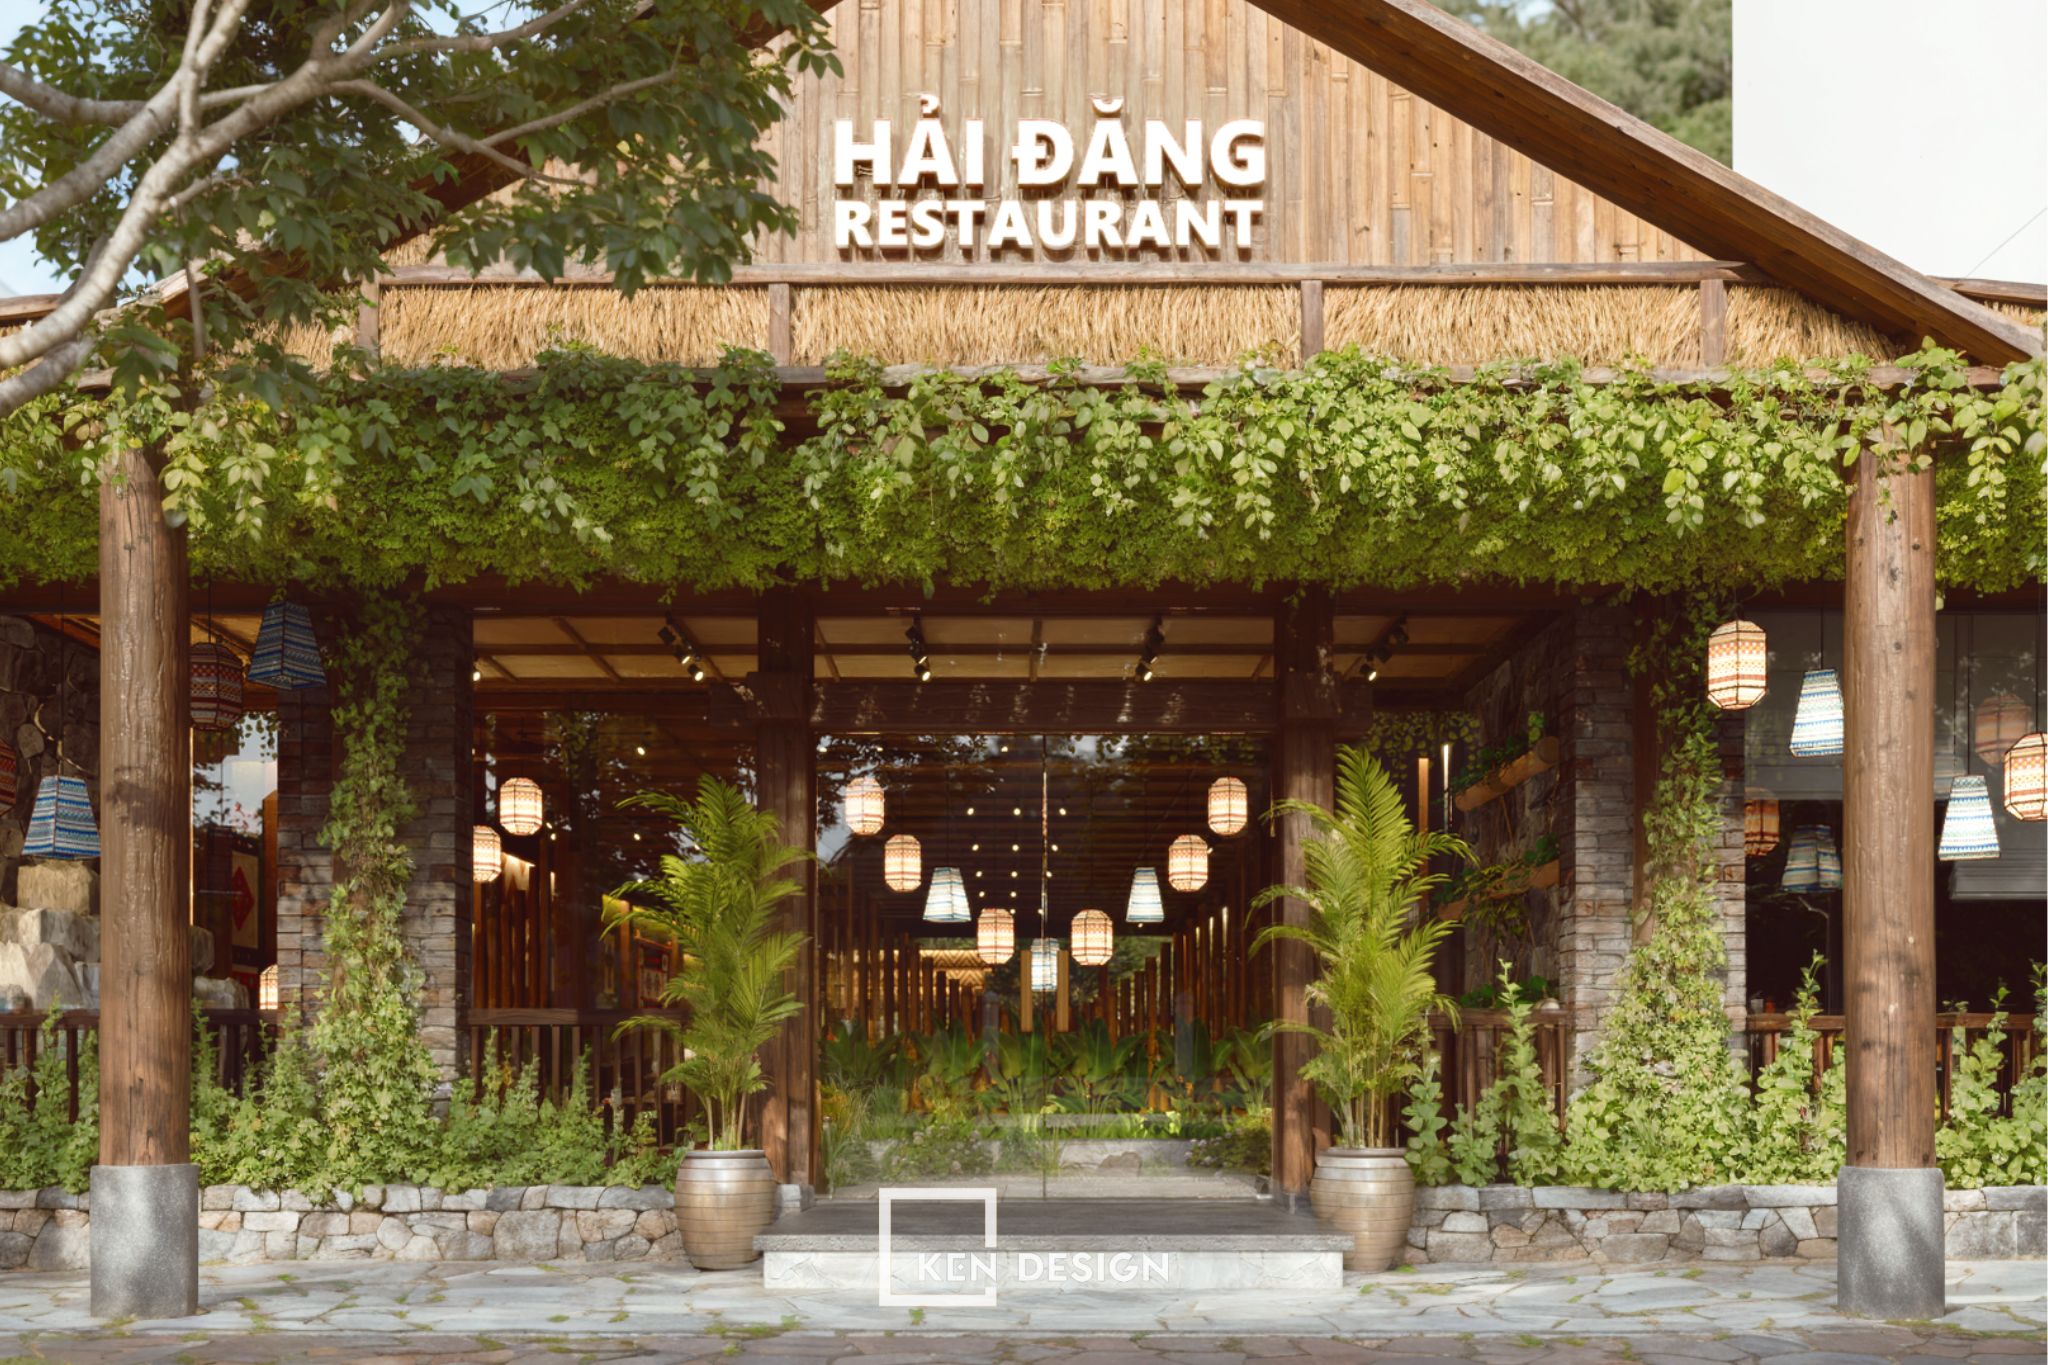 The Design of Hai Dang Restaurant